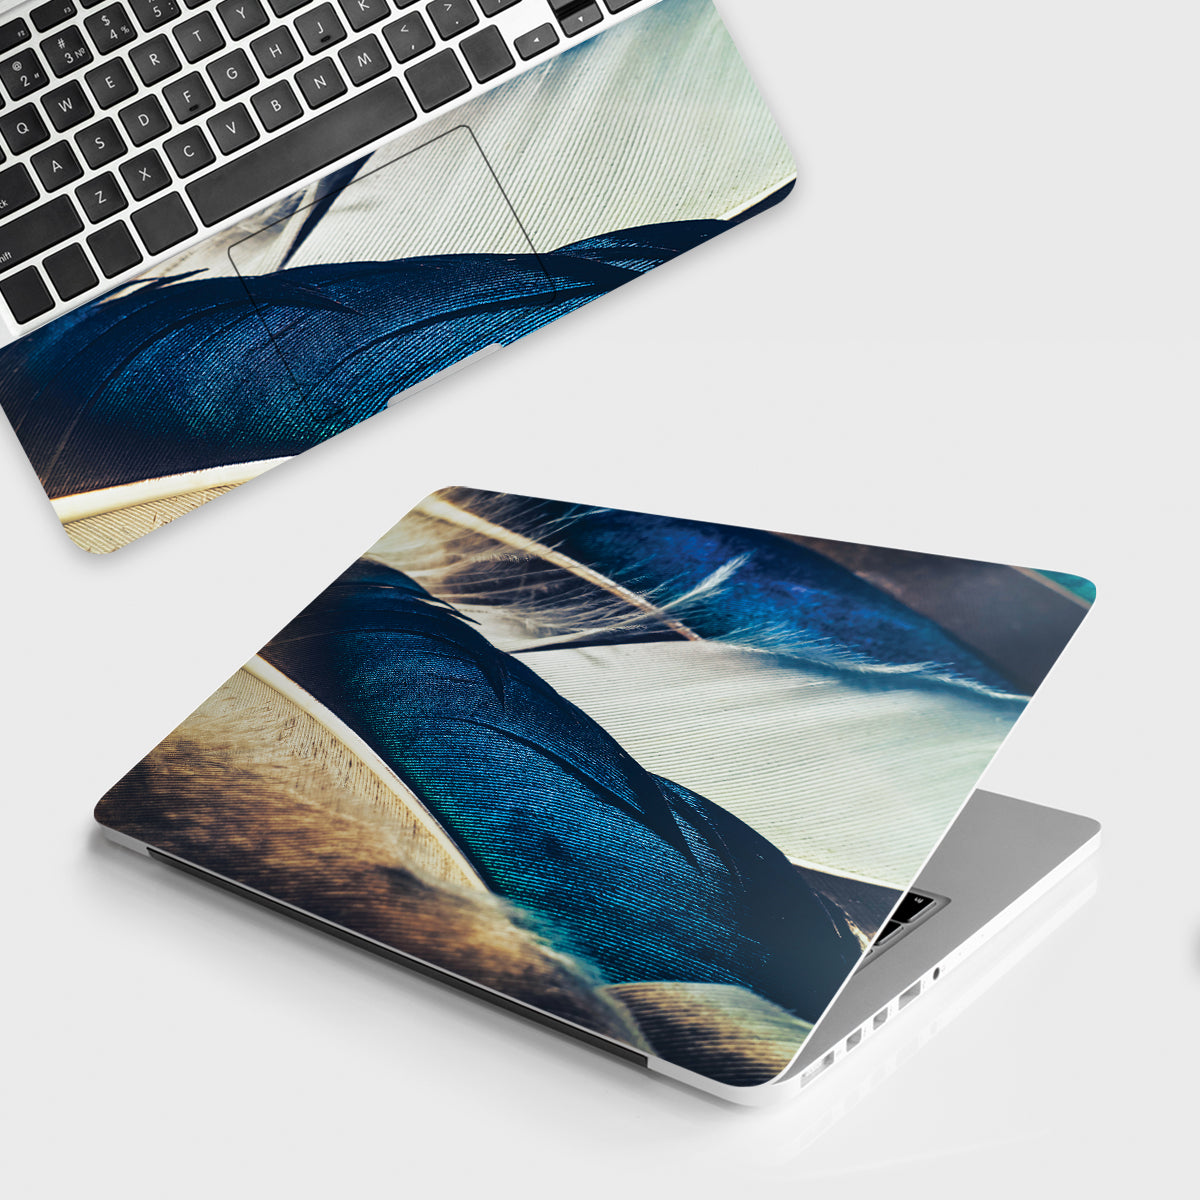 Fomo Store Laptop Skins Miscellaneous Feather Design